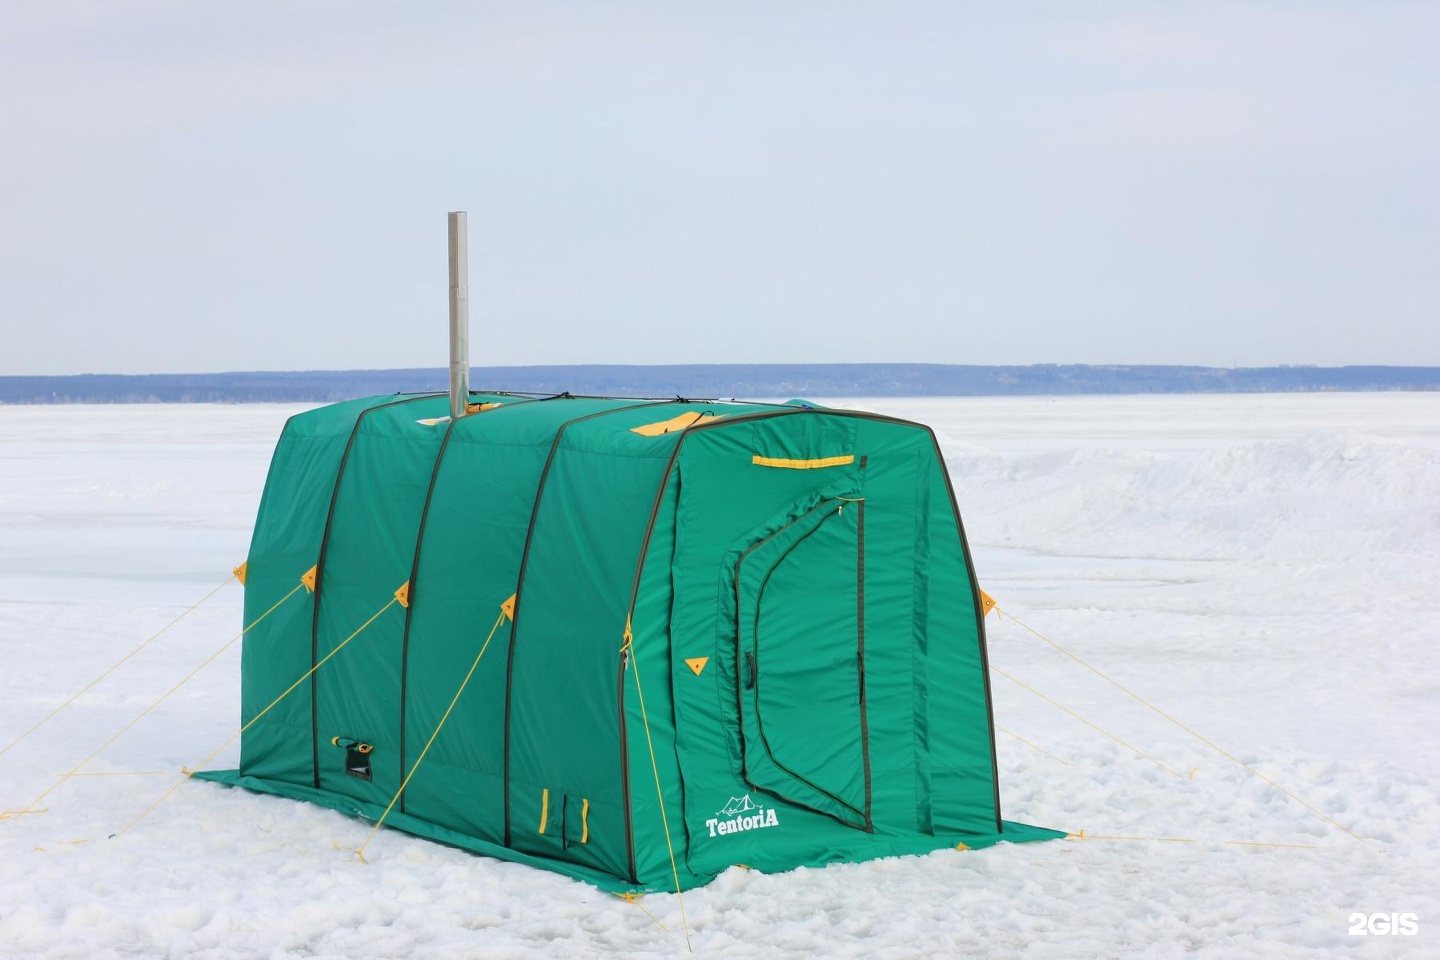 Купить мобильную баню палатку. Палатка тентория. Баня палатка. Мобильная баня палатка. Палатка для бани на природе.